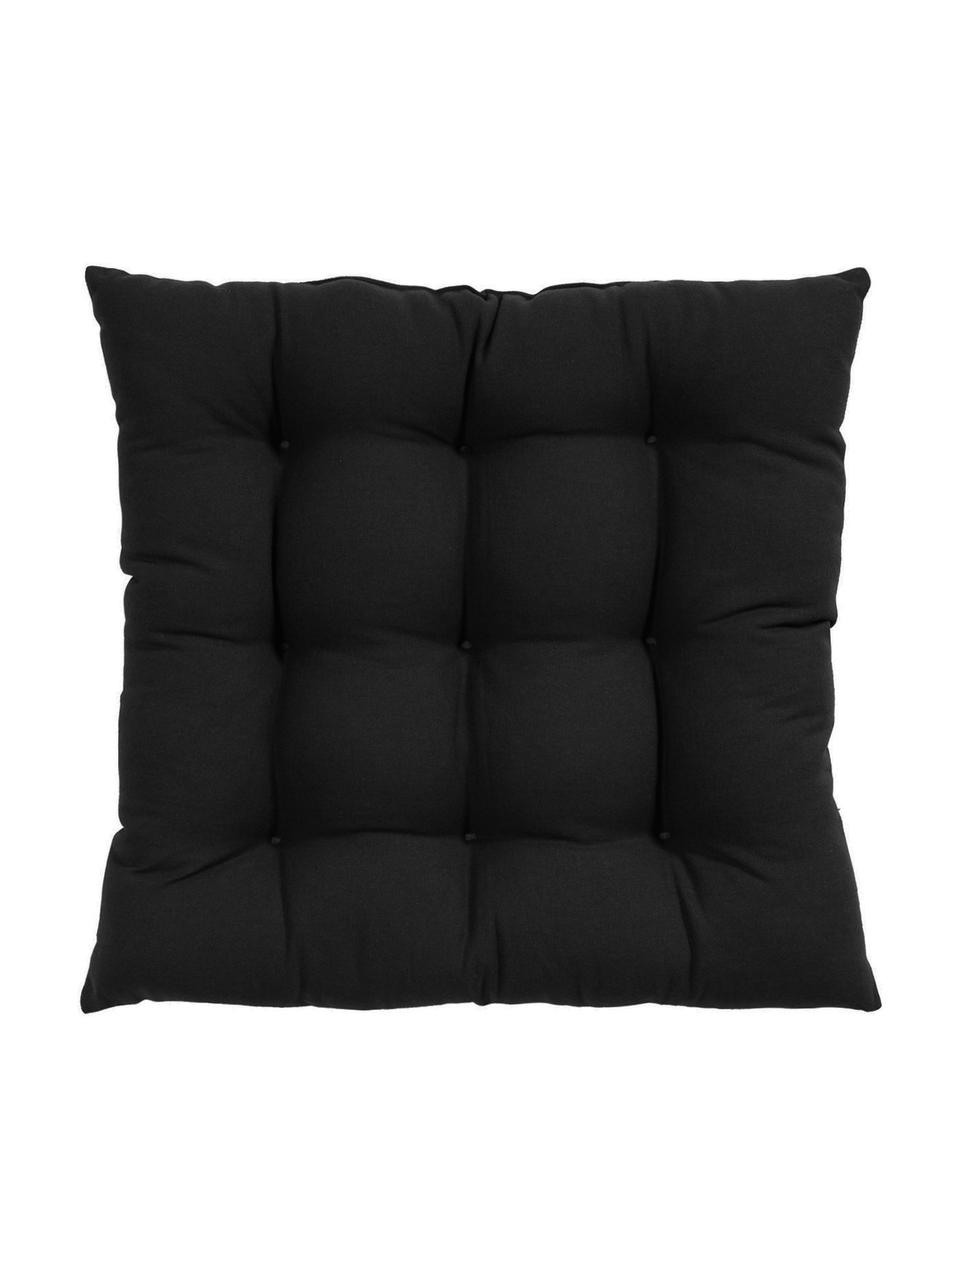 Baumwoll-Sitzkissen Ava, 2 Stück, Bezug: 100 % Baumwolle, Schwarz, B 40 x L 40 cm